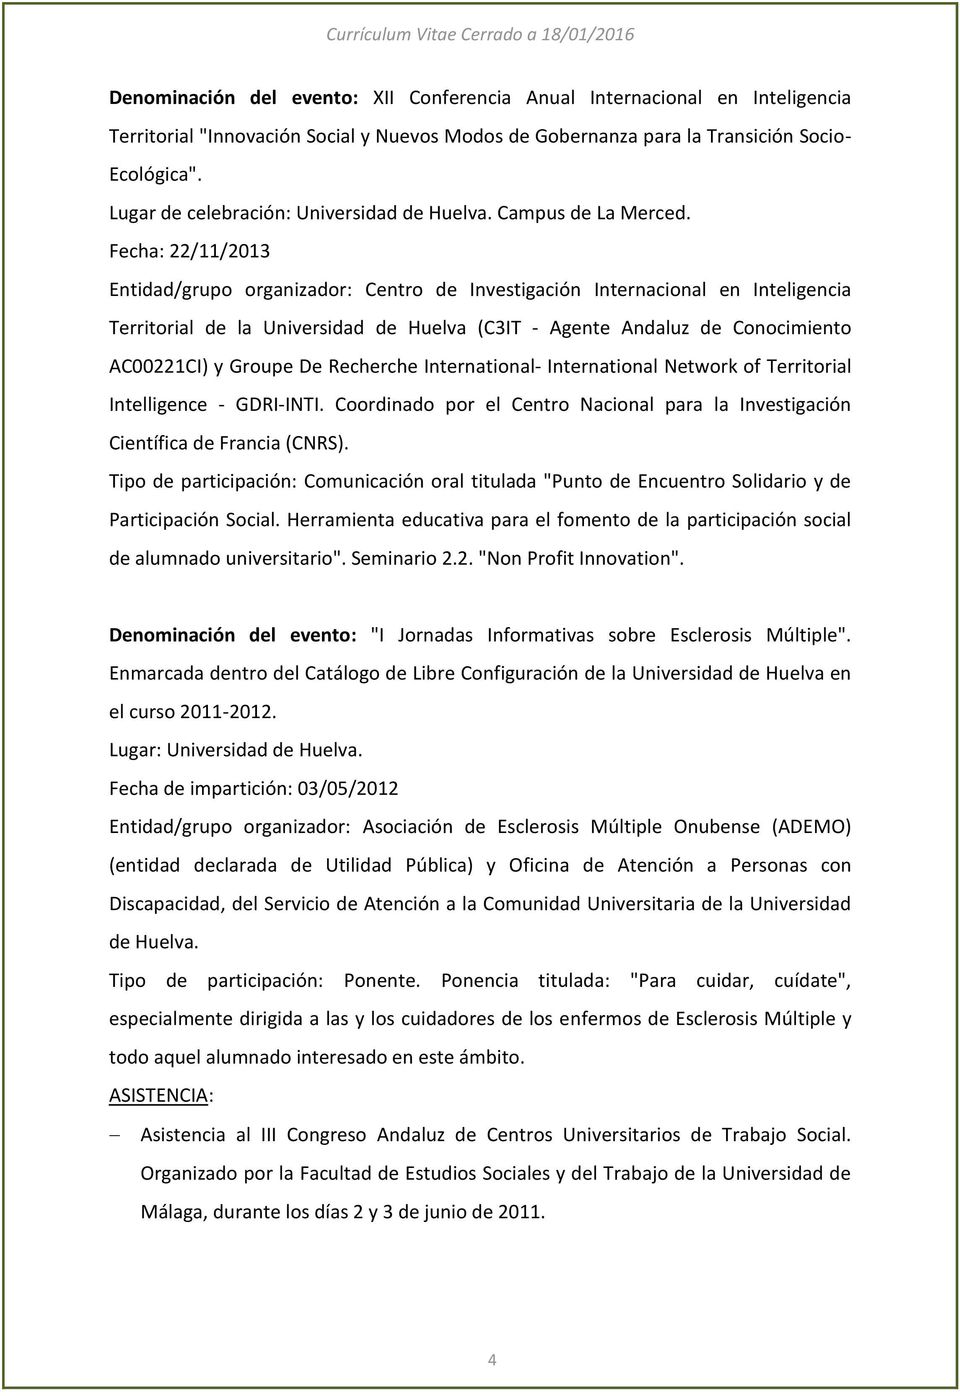 Fecha: 22/11/2013 Entidad/grupo organizador: Centro de Investigación Internacional en Inteligencia Territorial de la Universidad de Huelva (C3IT - Agente Andaluz de Conocimiento AC00221CI) y Groupe